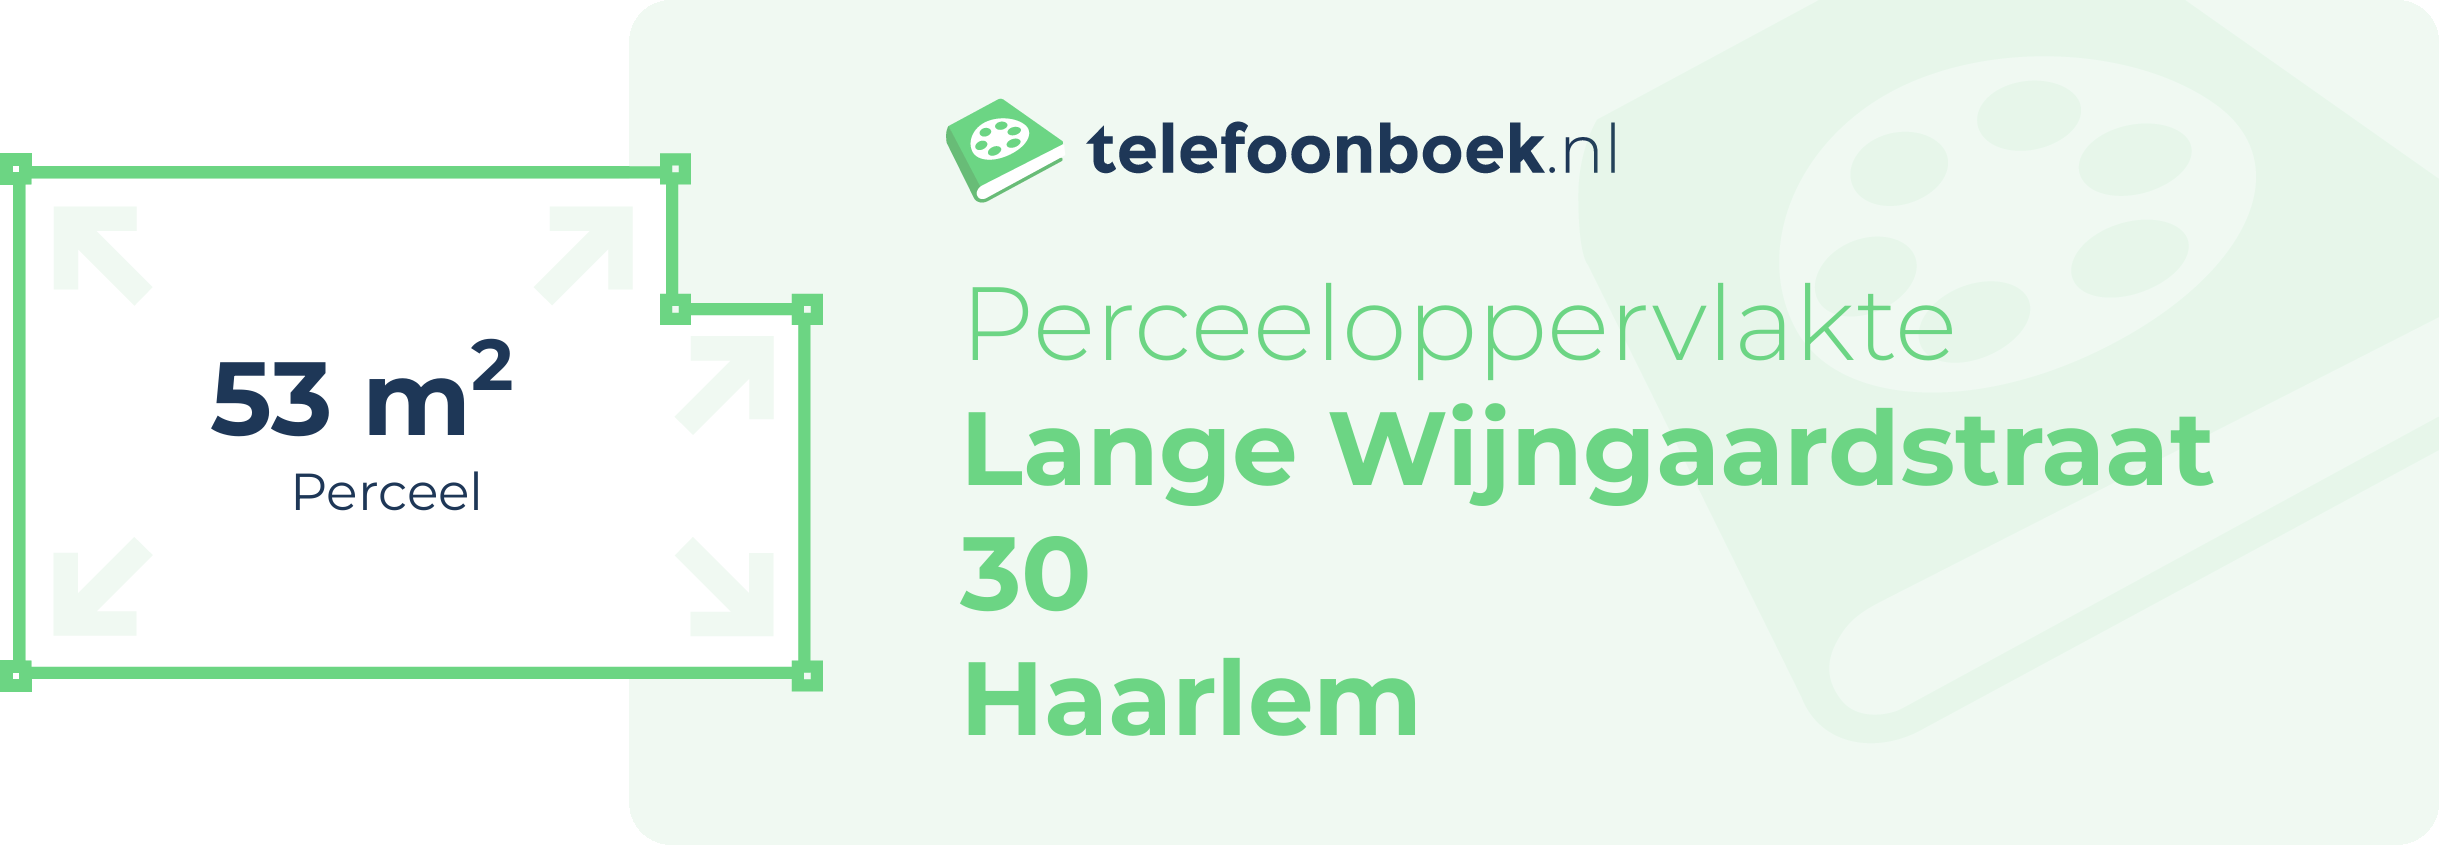 Perceeloppervlakte Lange Wijngaardstraat 30 Haarlem